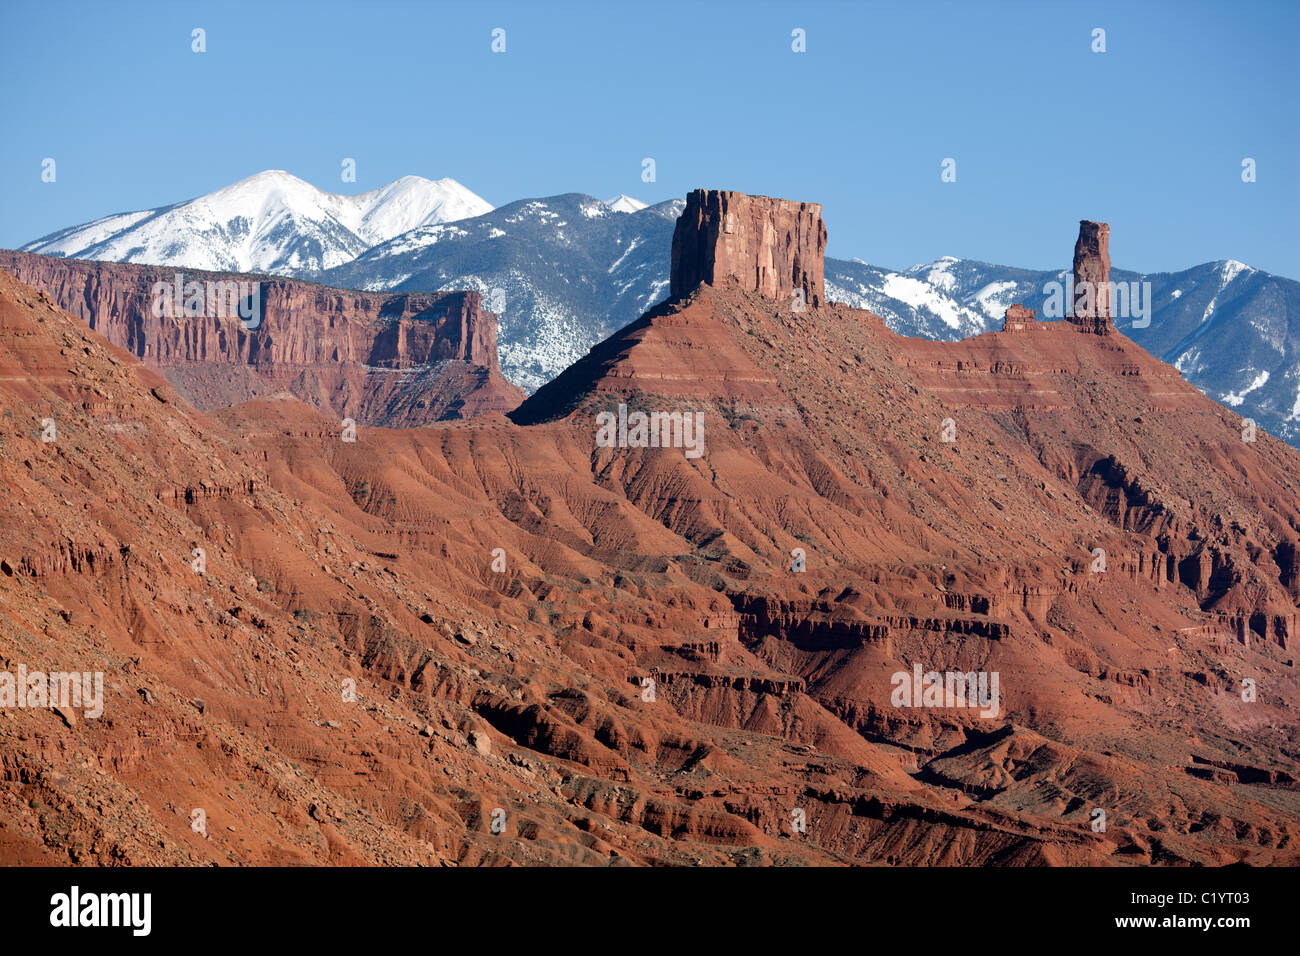 LUFTAUFNAHME. Monolithen aus rotem Sandstein im Castle Rock und schneebedeckten La Sal Mountains. Moab, Grand County, Utah, USA. Stockfoto